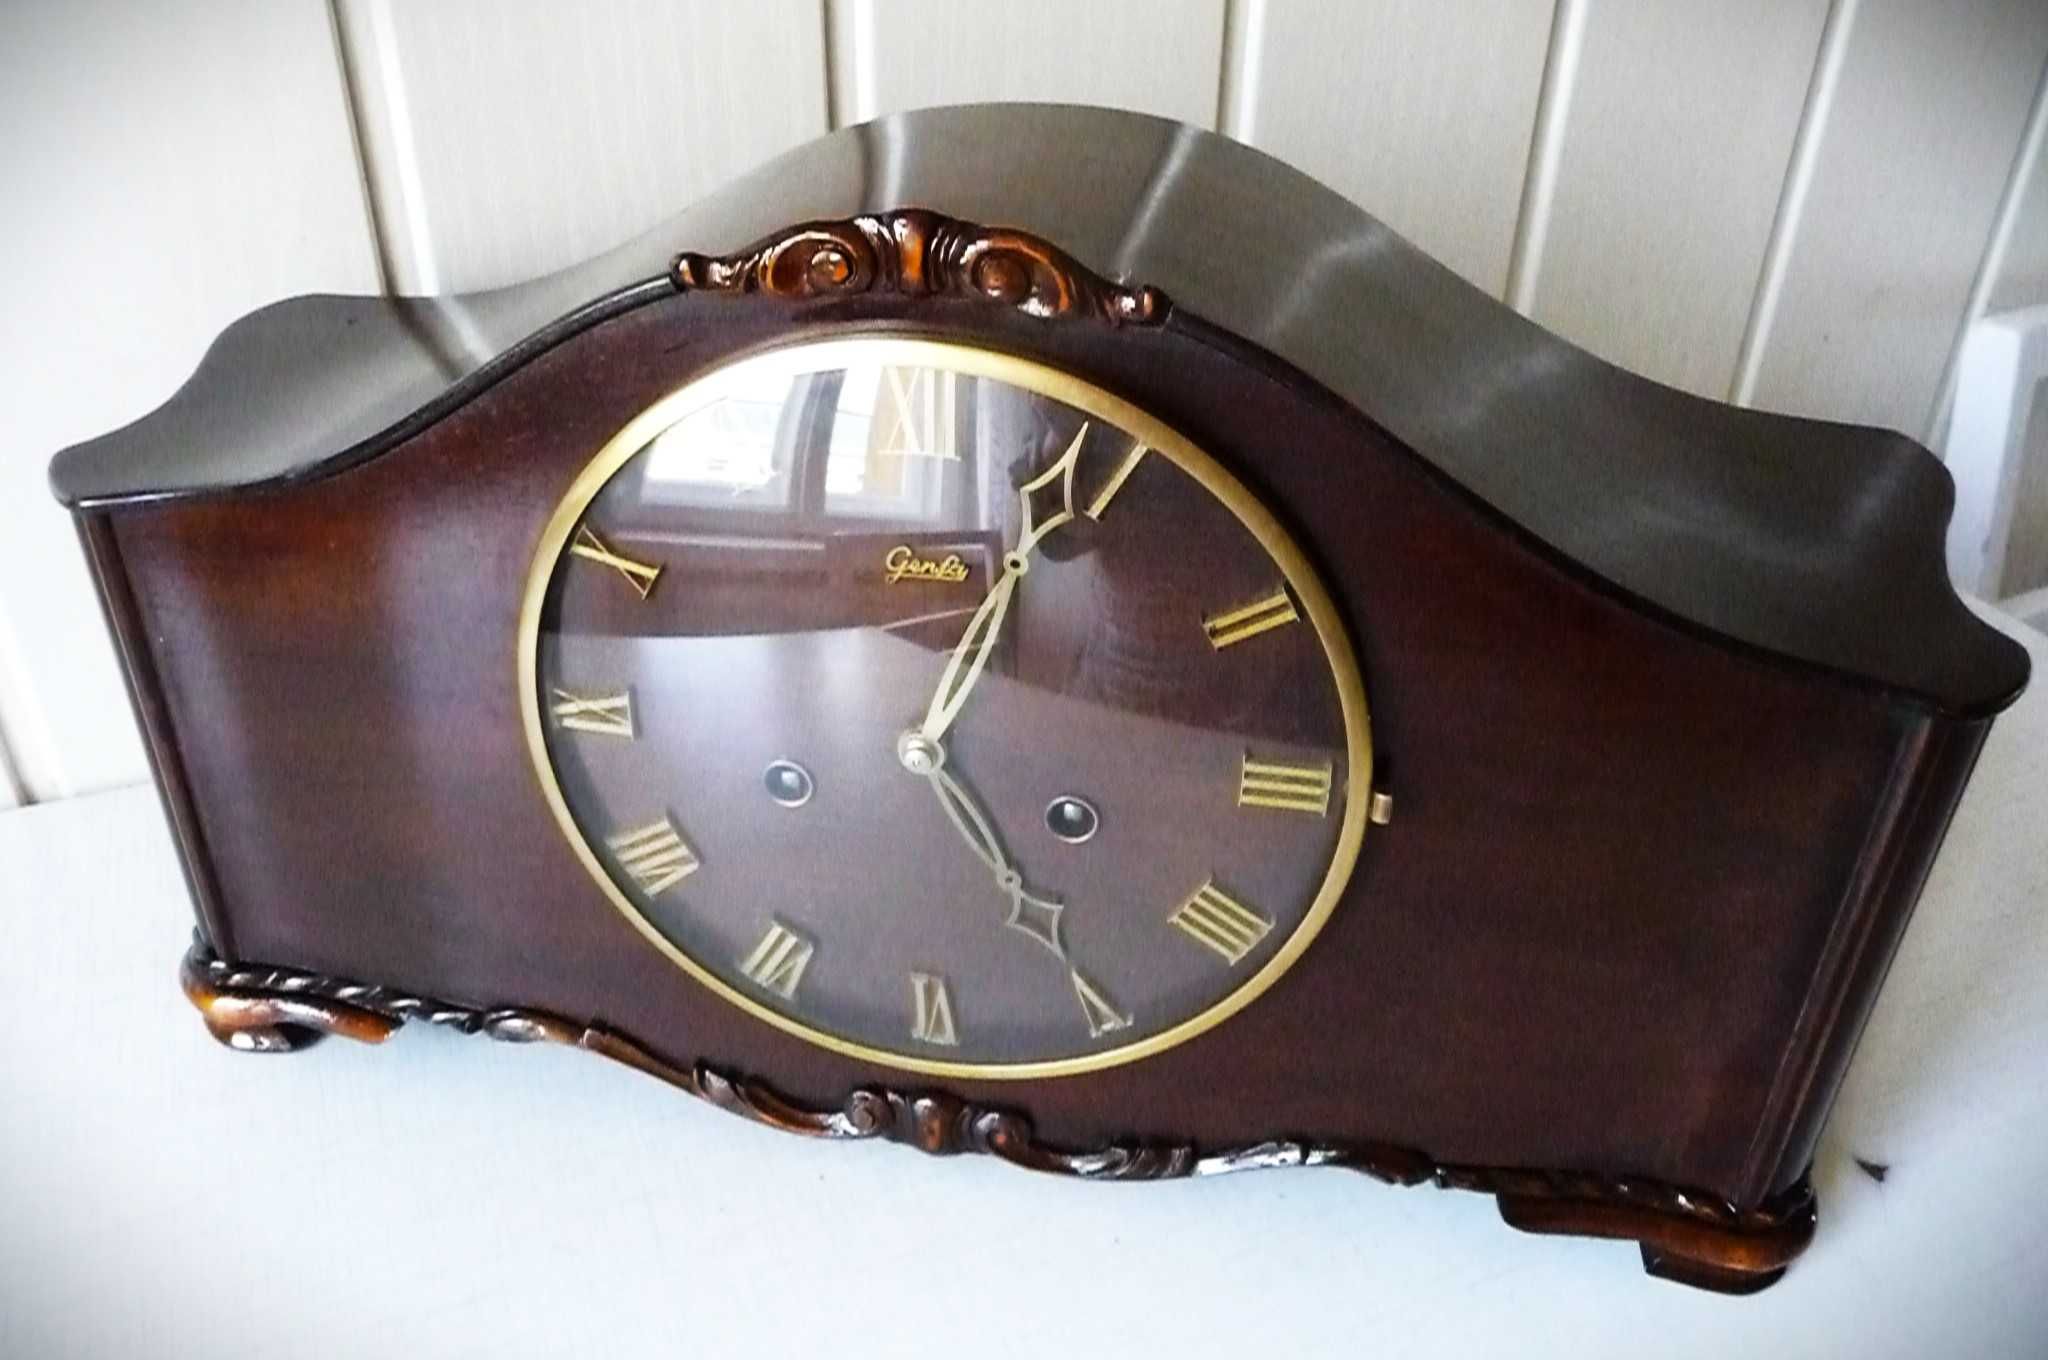 Piękny zegar kominkowy Genfa Odo,sprawny,3struny,wersja lux